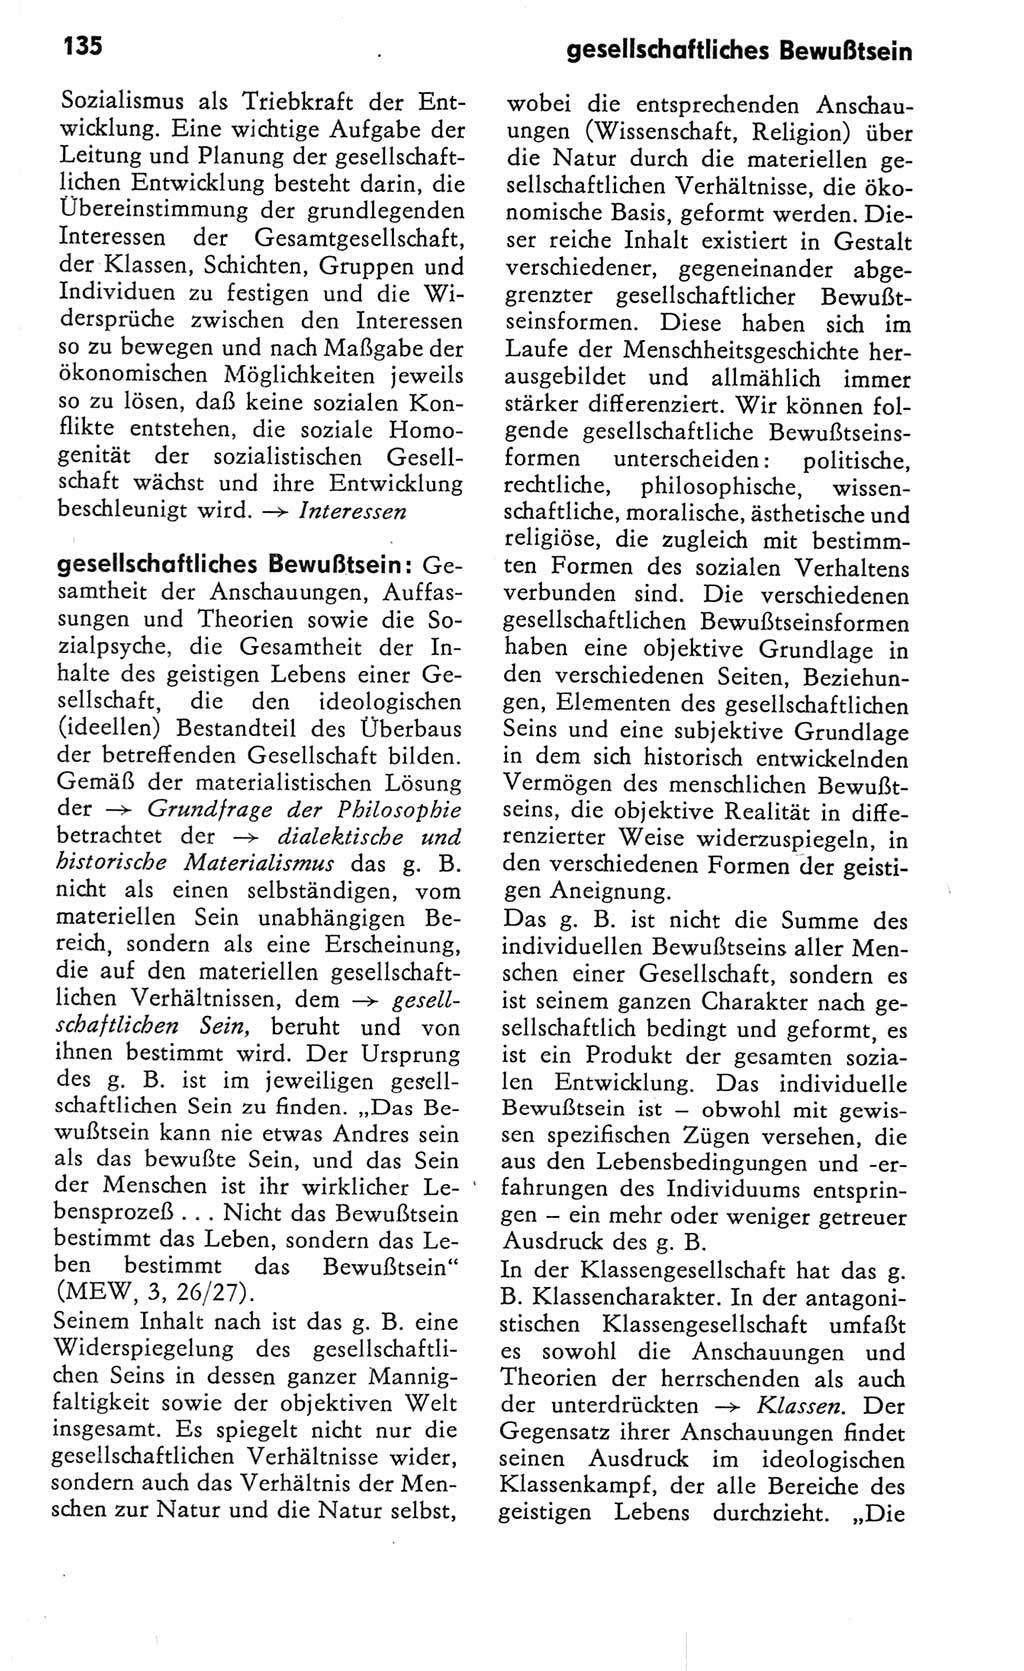 Kleines Wörterbuch der marxistisch-leninistischen Philosophie [Deutsche Demokratische Republik (DDR)] 1982, Seite 135 (Kl. Wb. ML Phil. DDR 1982, S. 135)